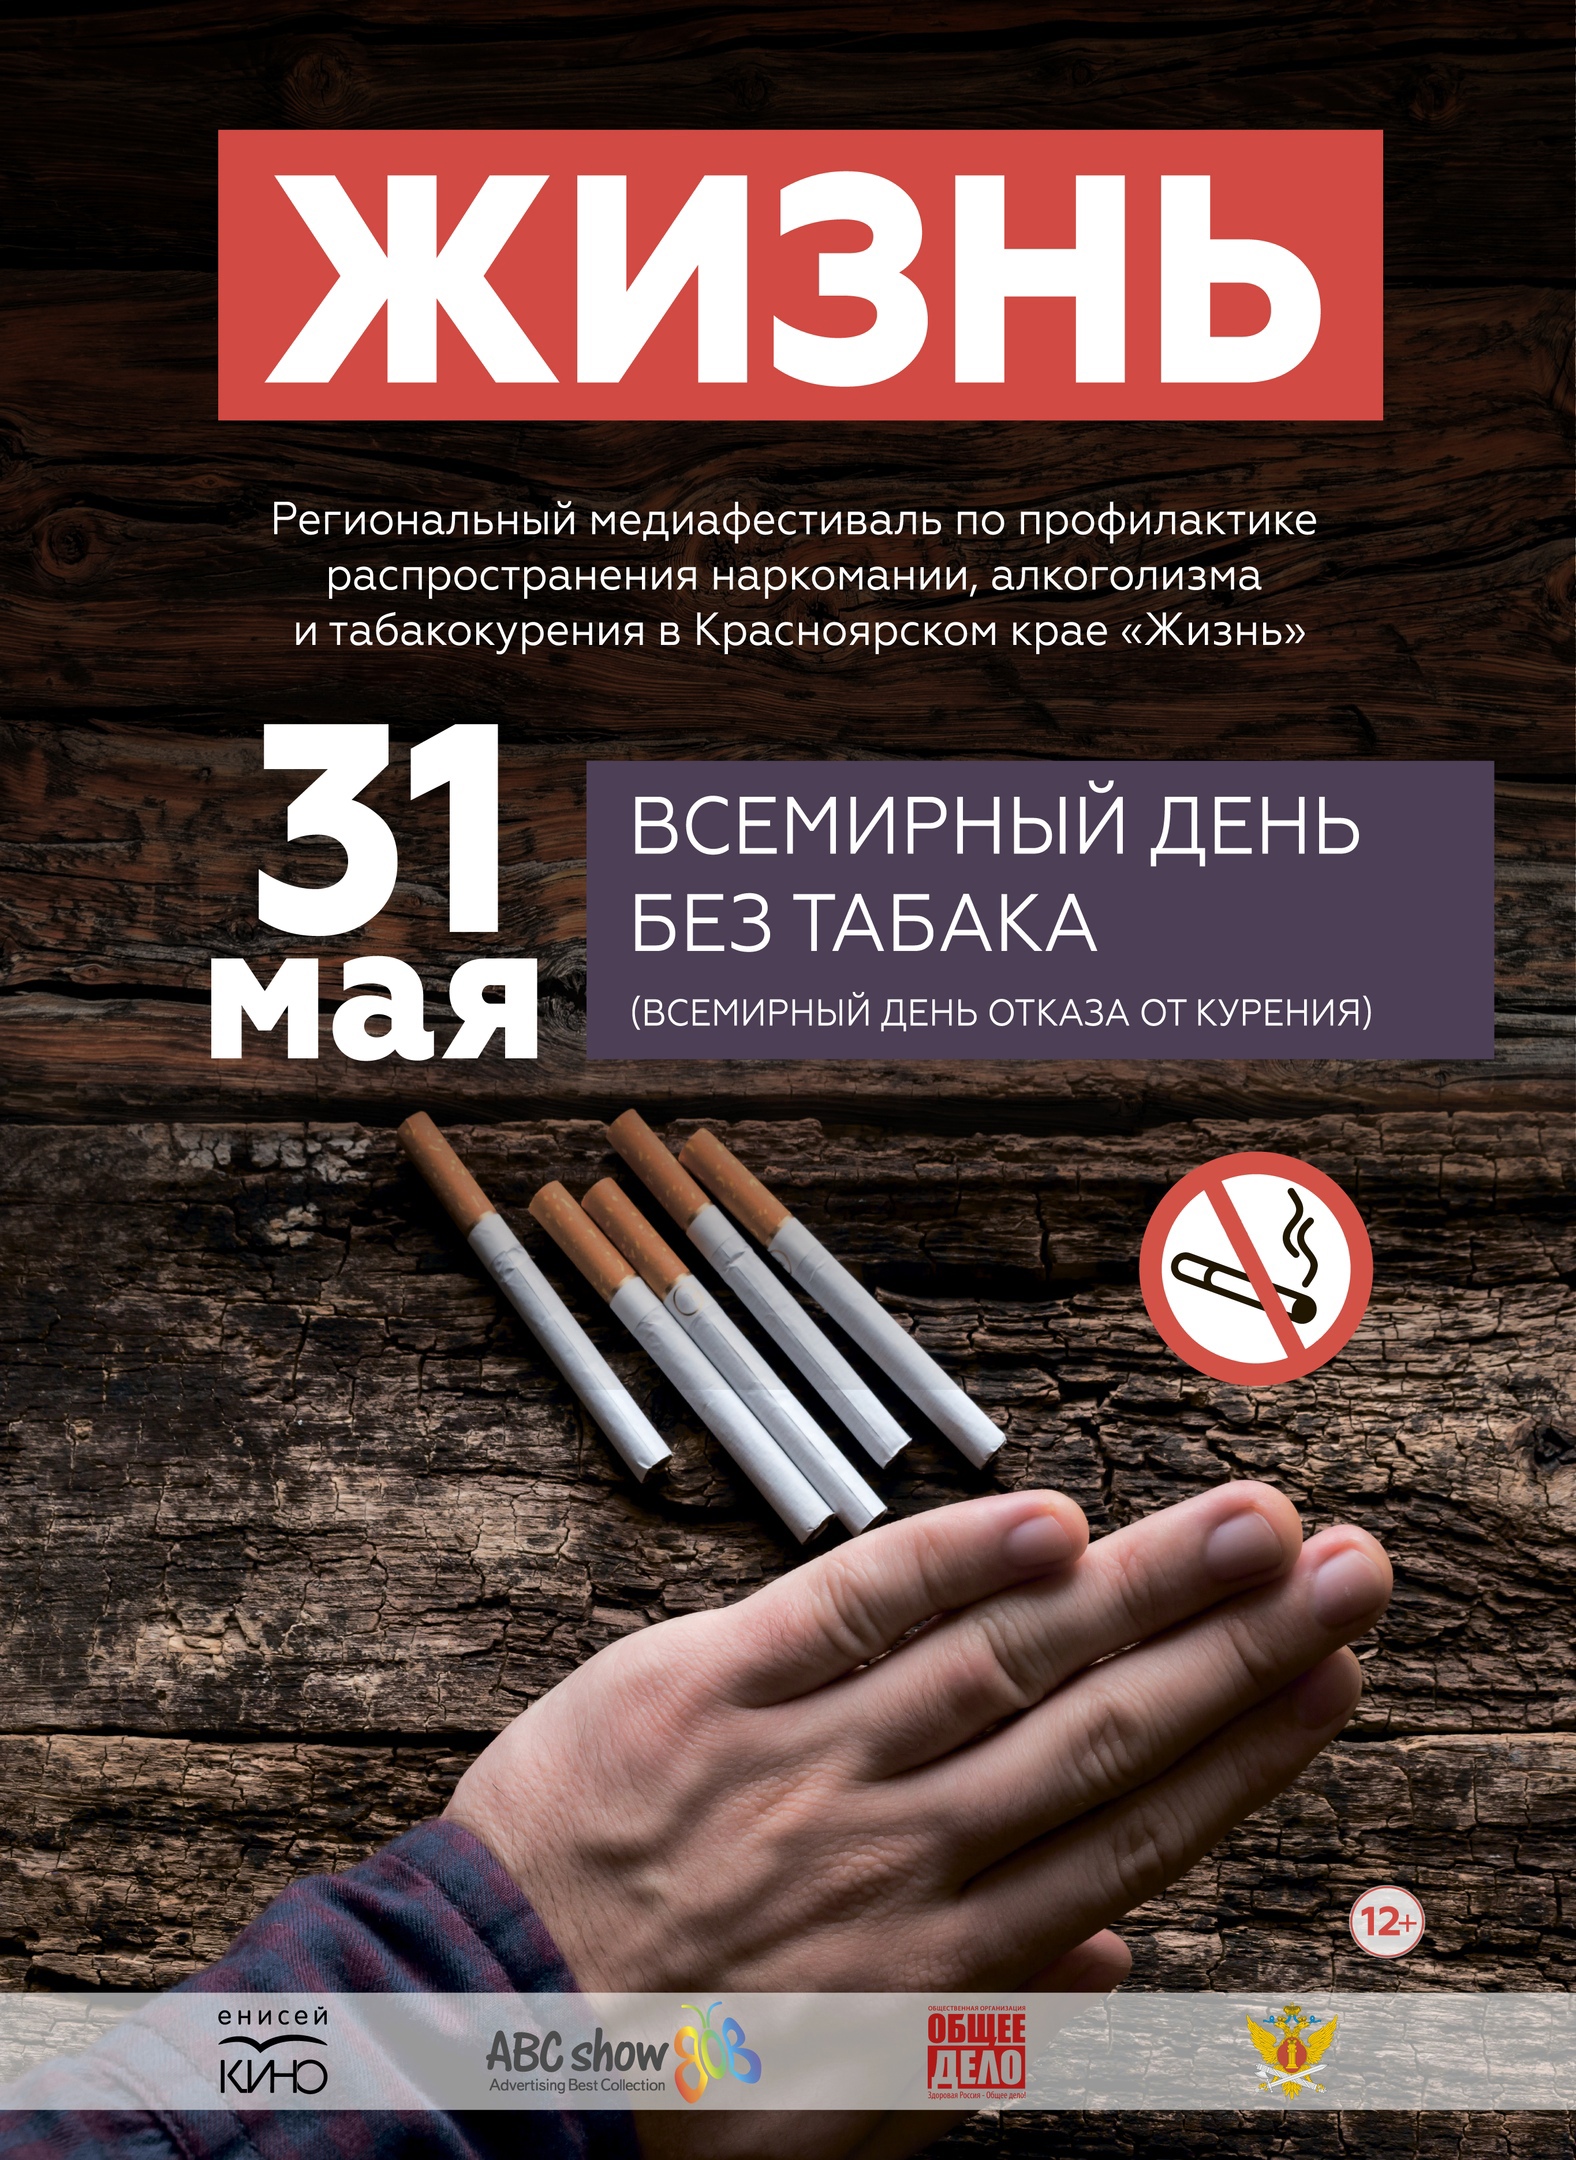 Боремся с курением, алкоголизмом и наркоманией: в Красноярском крае пройдет медиафестиваль «Жизнь»